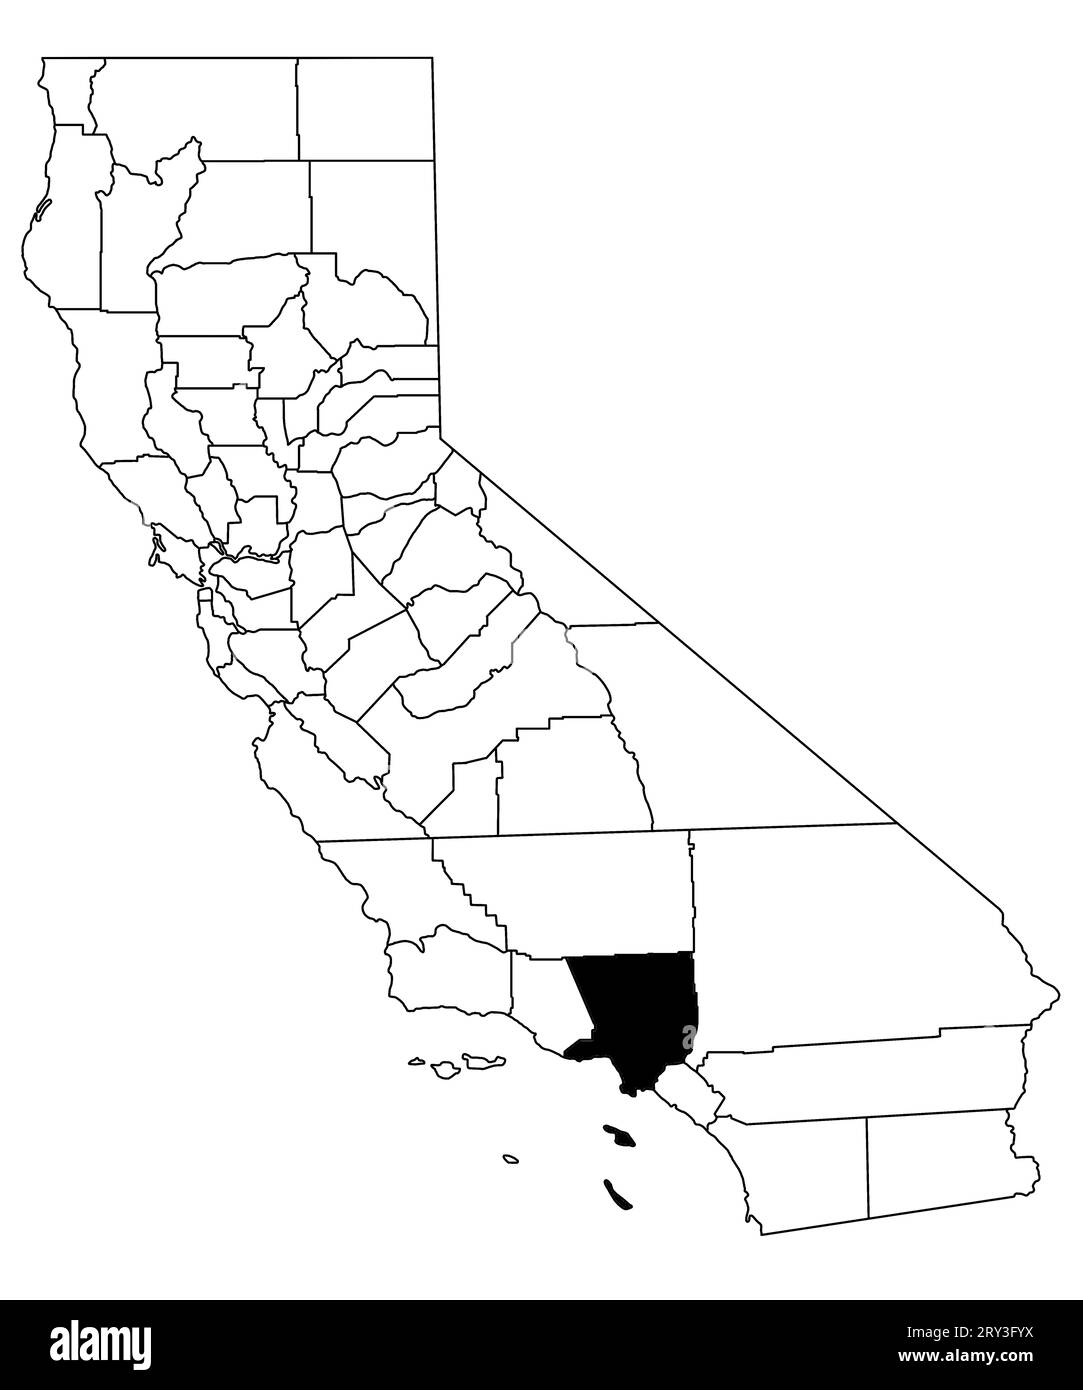 Carte du comté de los Angeles dans l'état de Californie sur fond blanc. Carte de Single County surlignée en noir sur la carte de Californie. ÉTATS-UNIS, ÉTATS-UNIS Banque D'Images